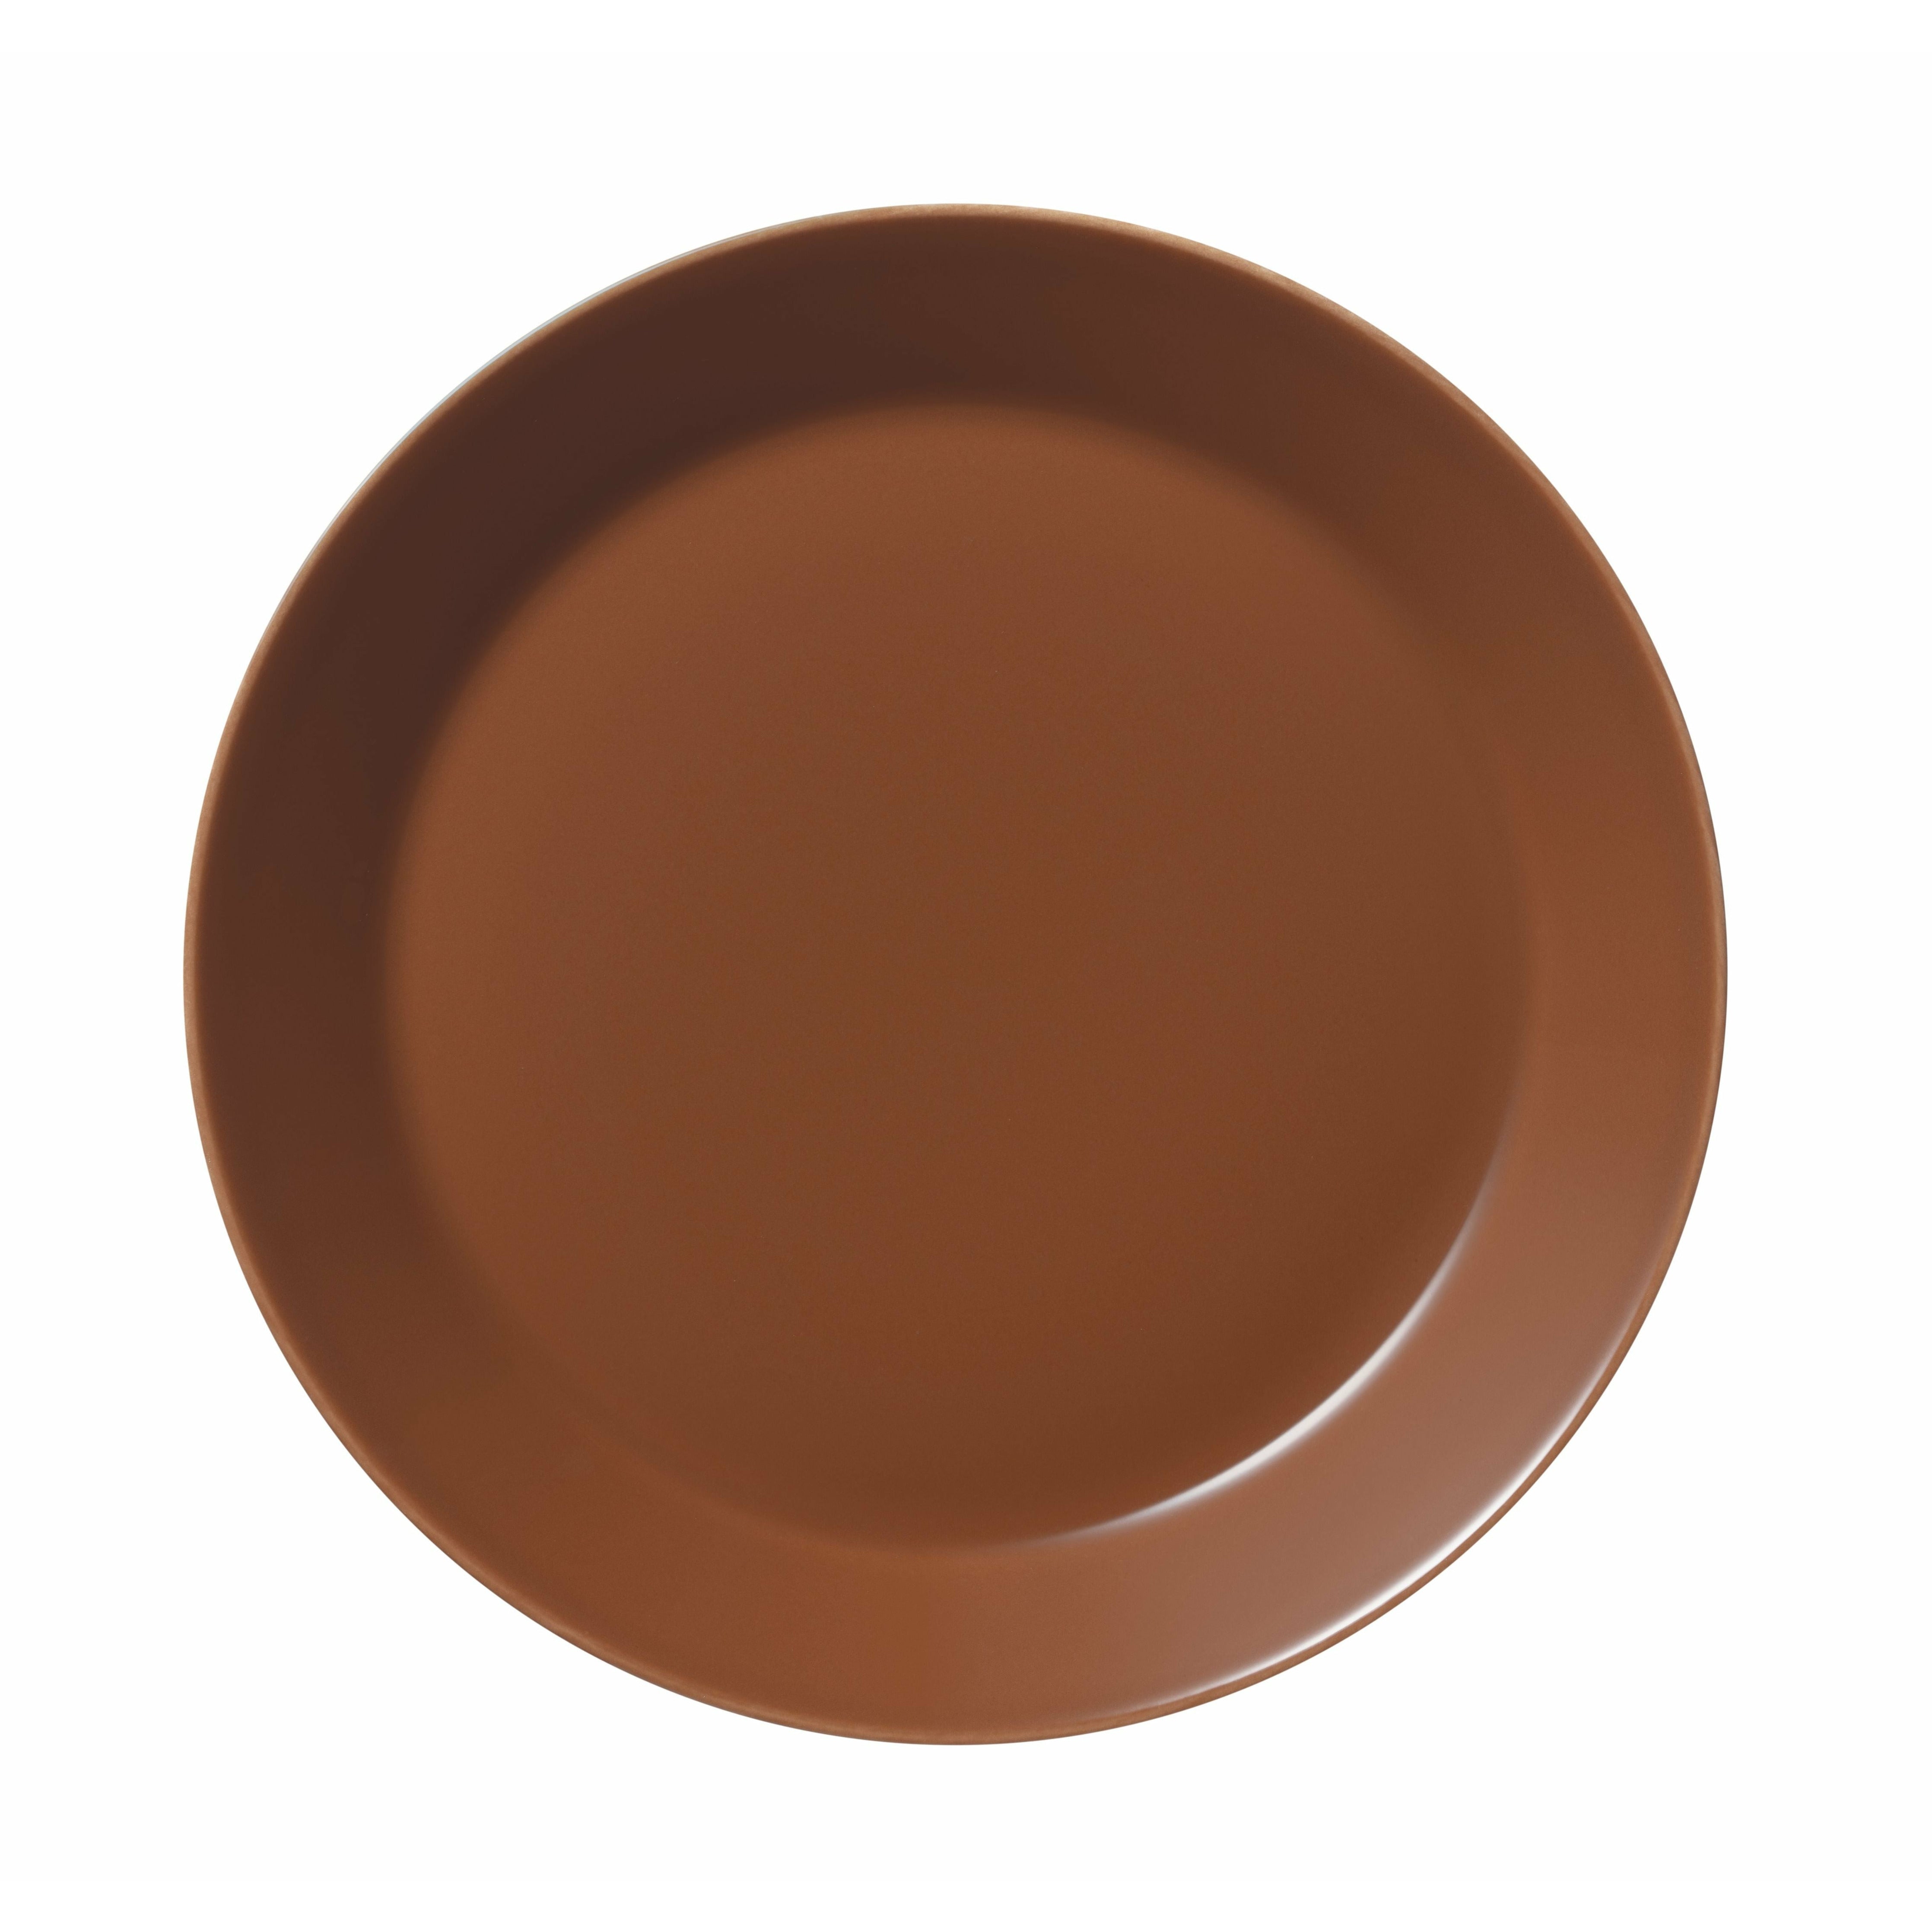 Iittala Teema Plate Flat 21cm, Vintage Brown